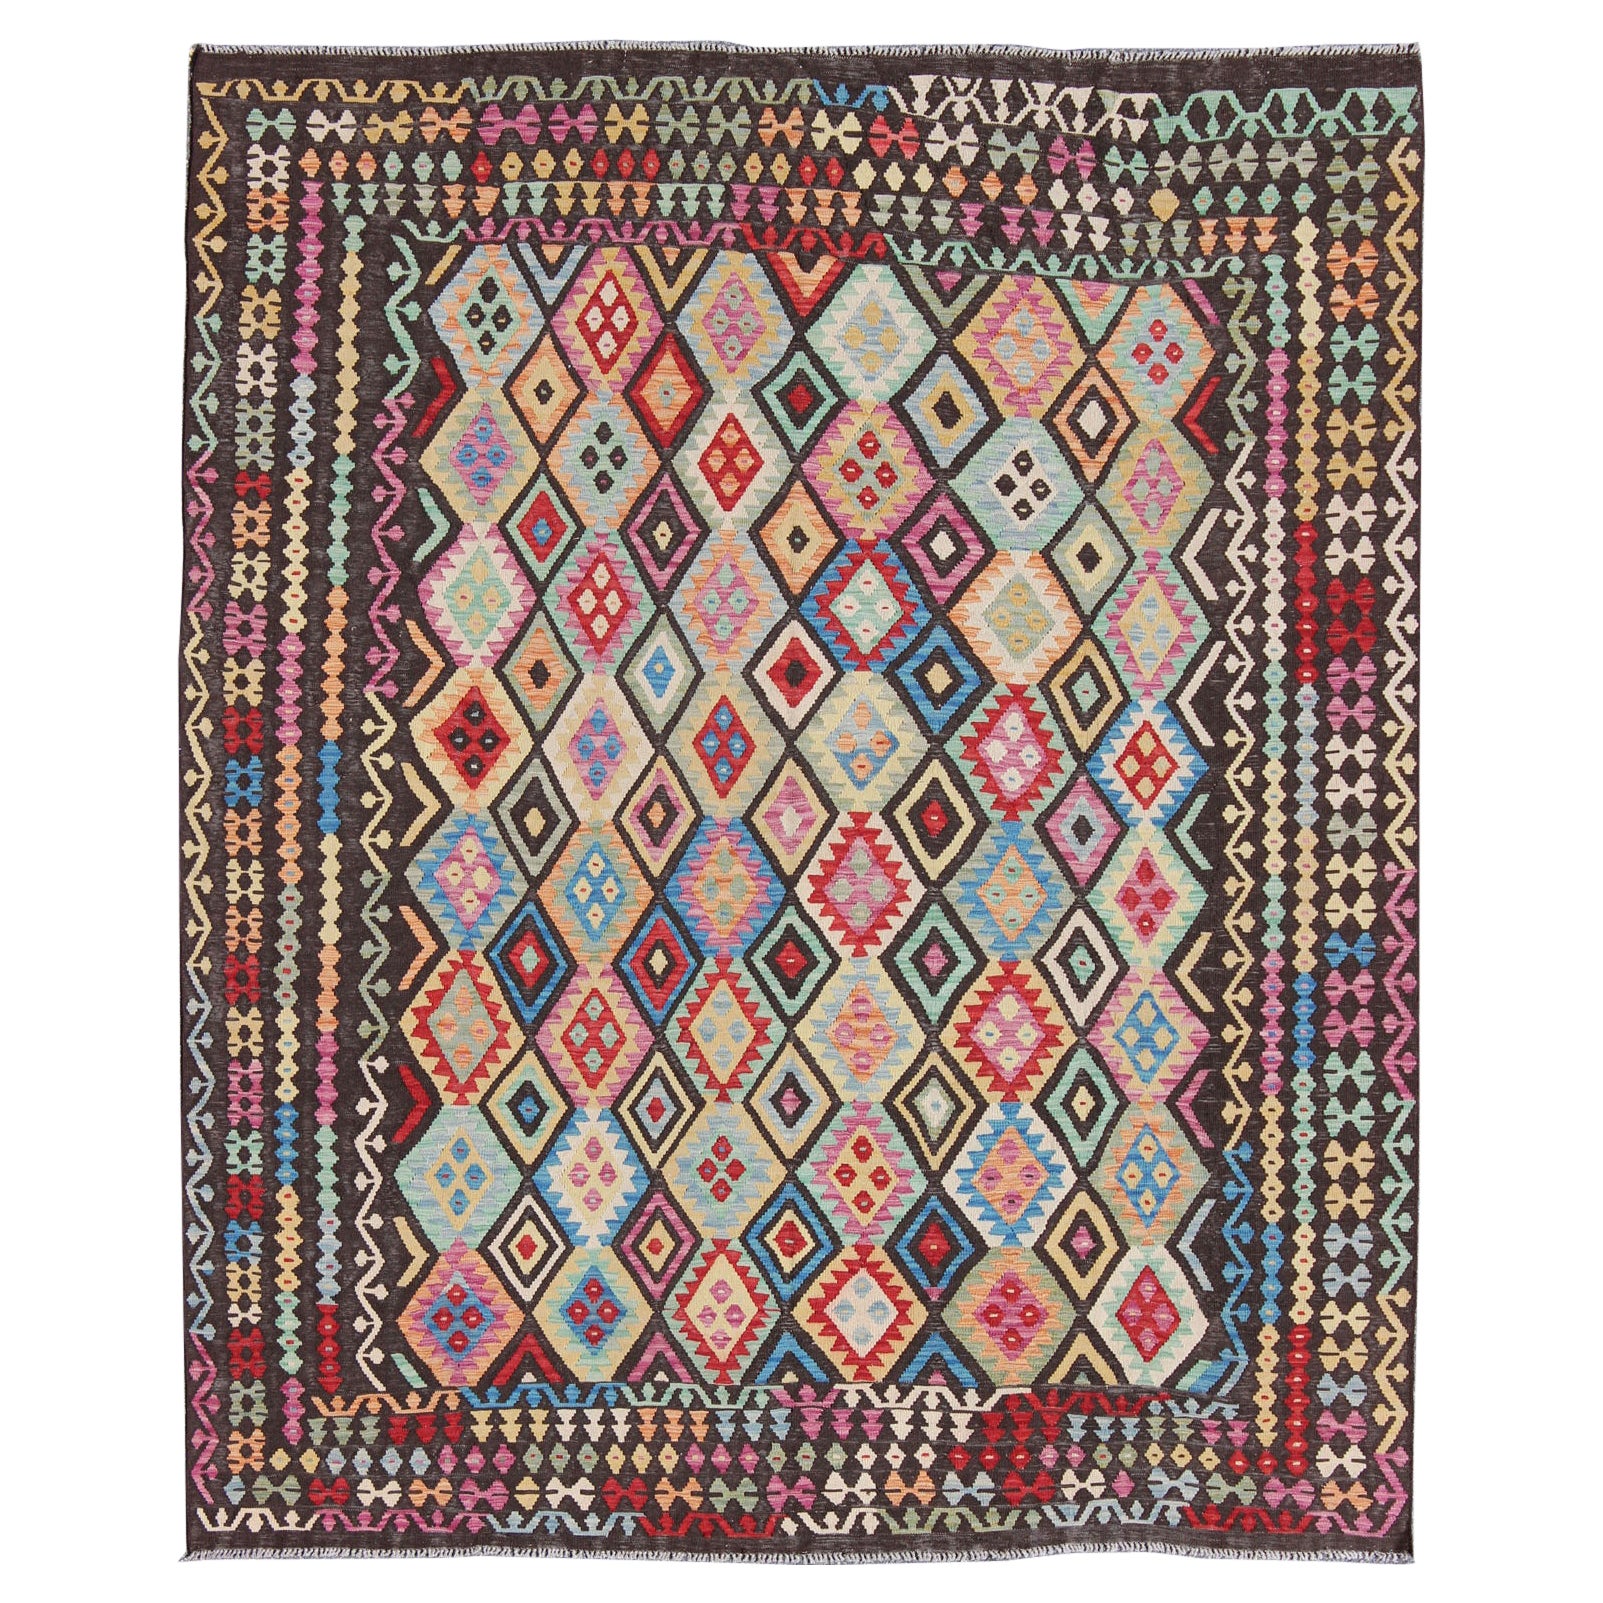 Bunter Flachgewebter Kelim-Teppich mit Schokoladenbraun und hellen mehrfarbigen Farben, Stammeskunst im Angebot